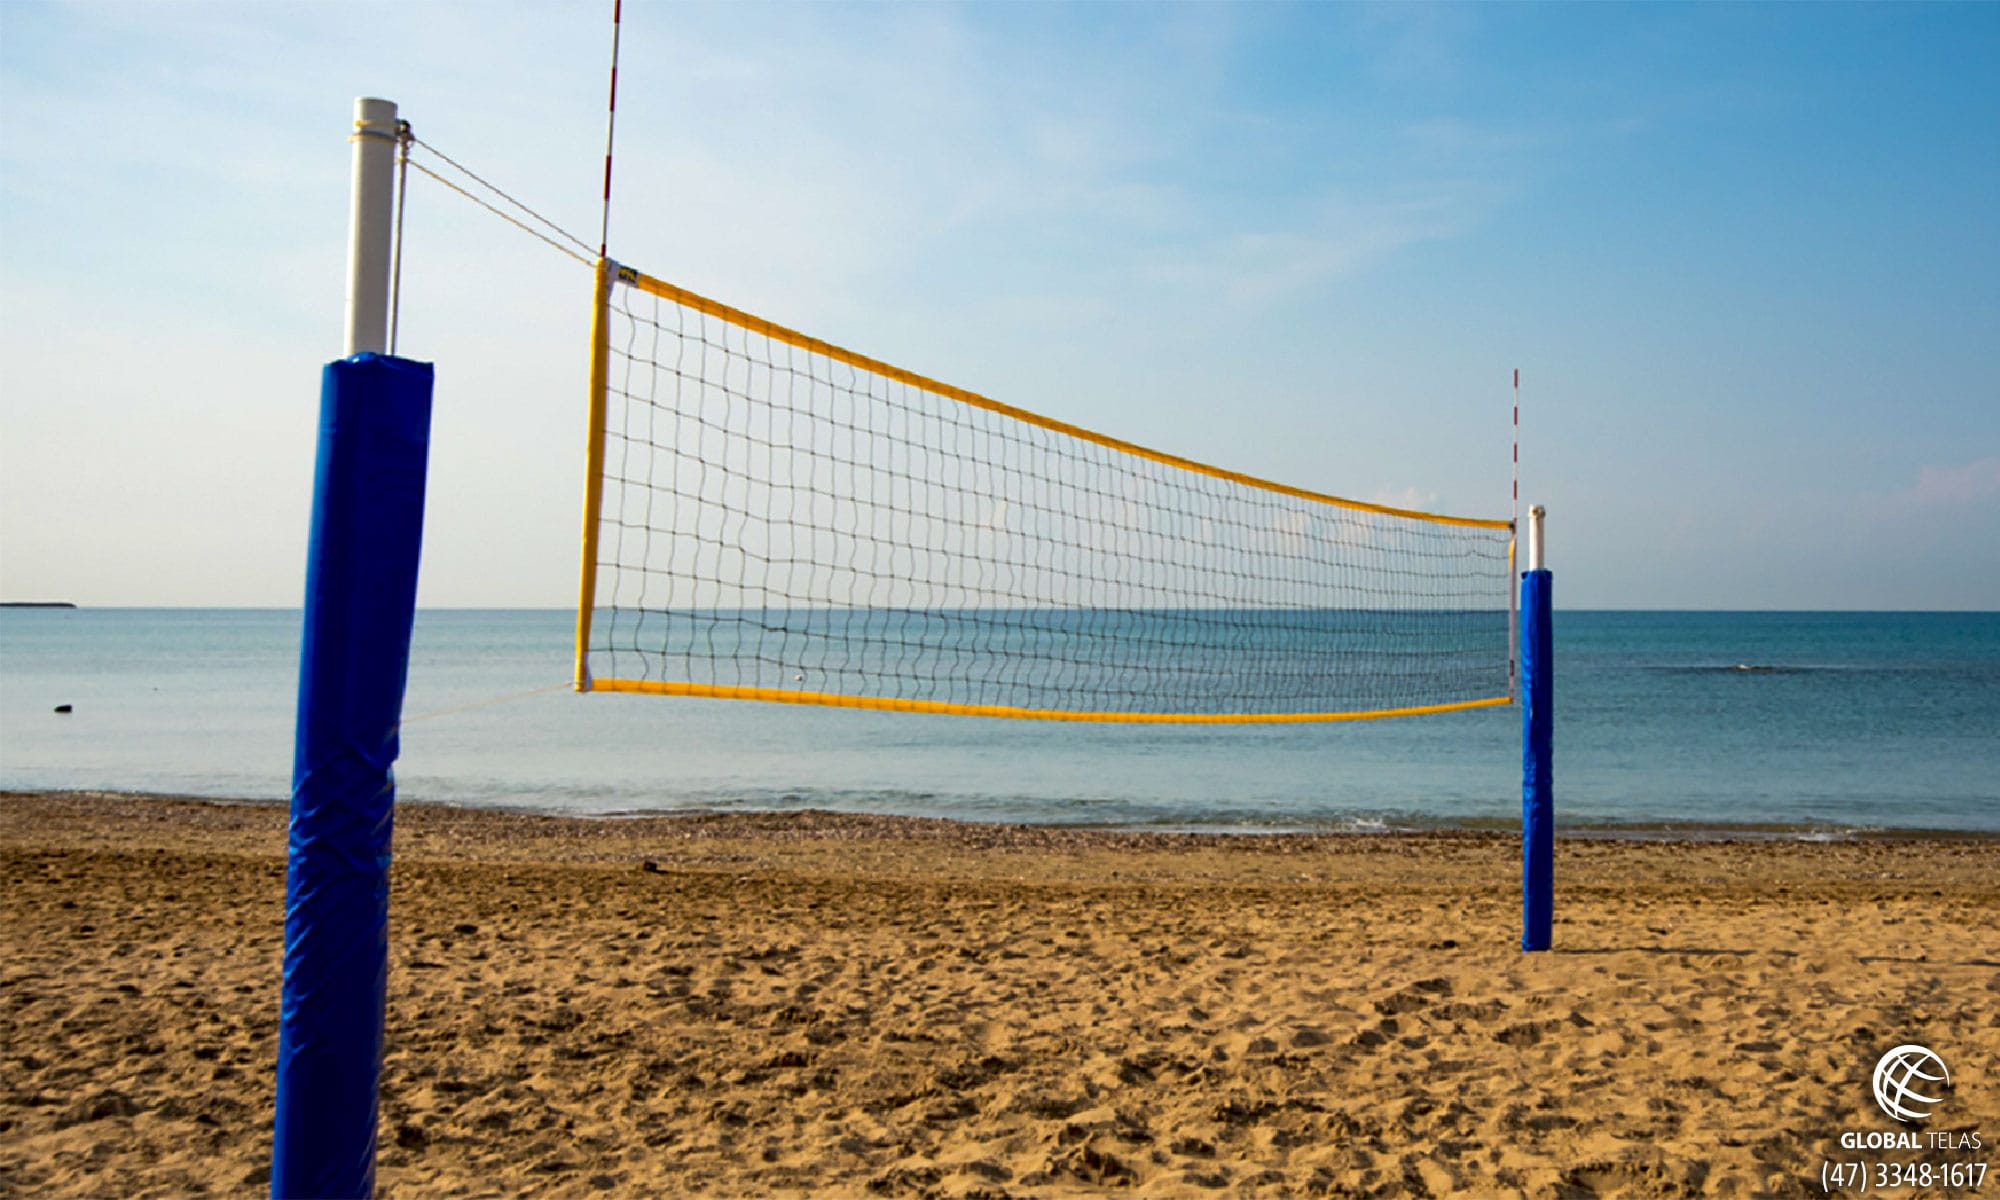 Vôlei de praia: conheça tudo sobre esse esporte de rede!